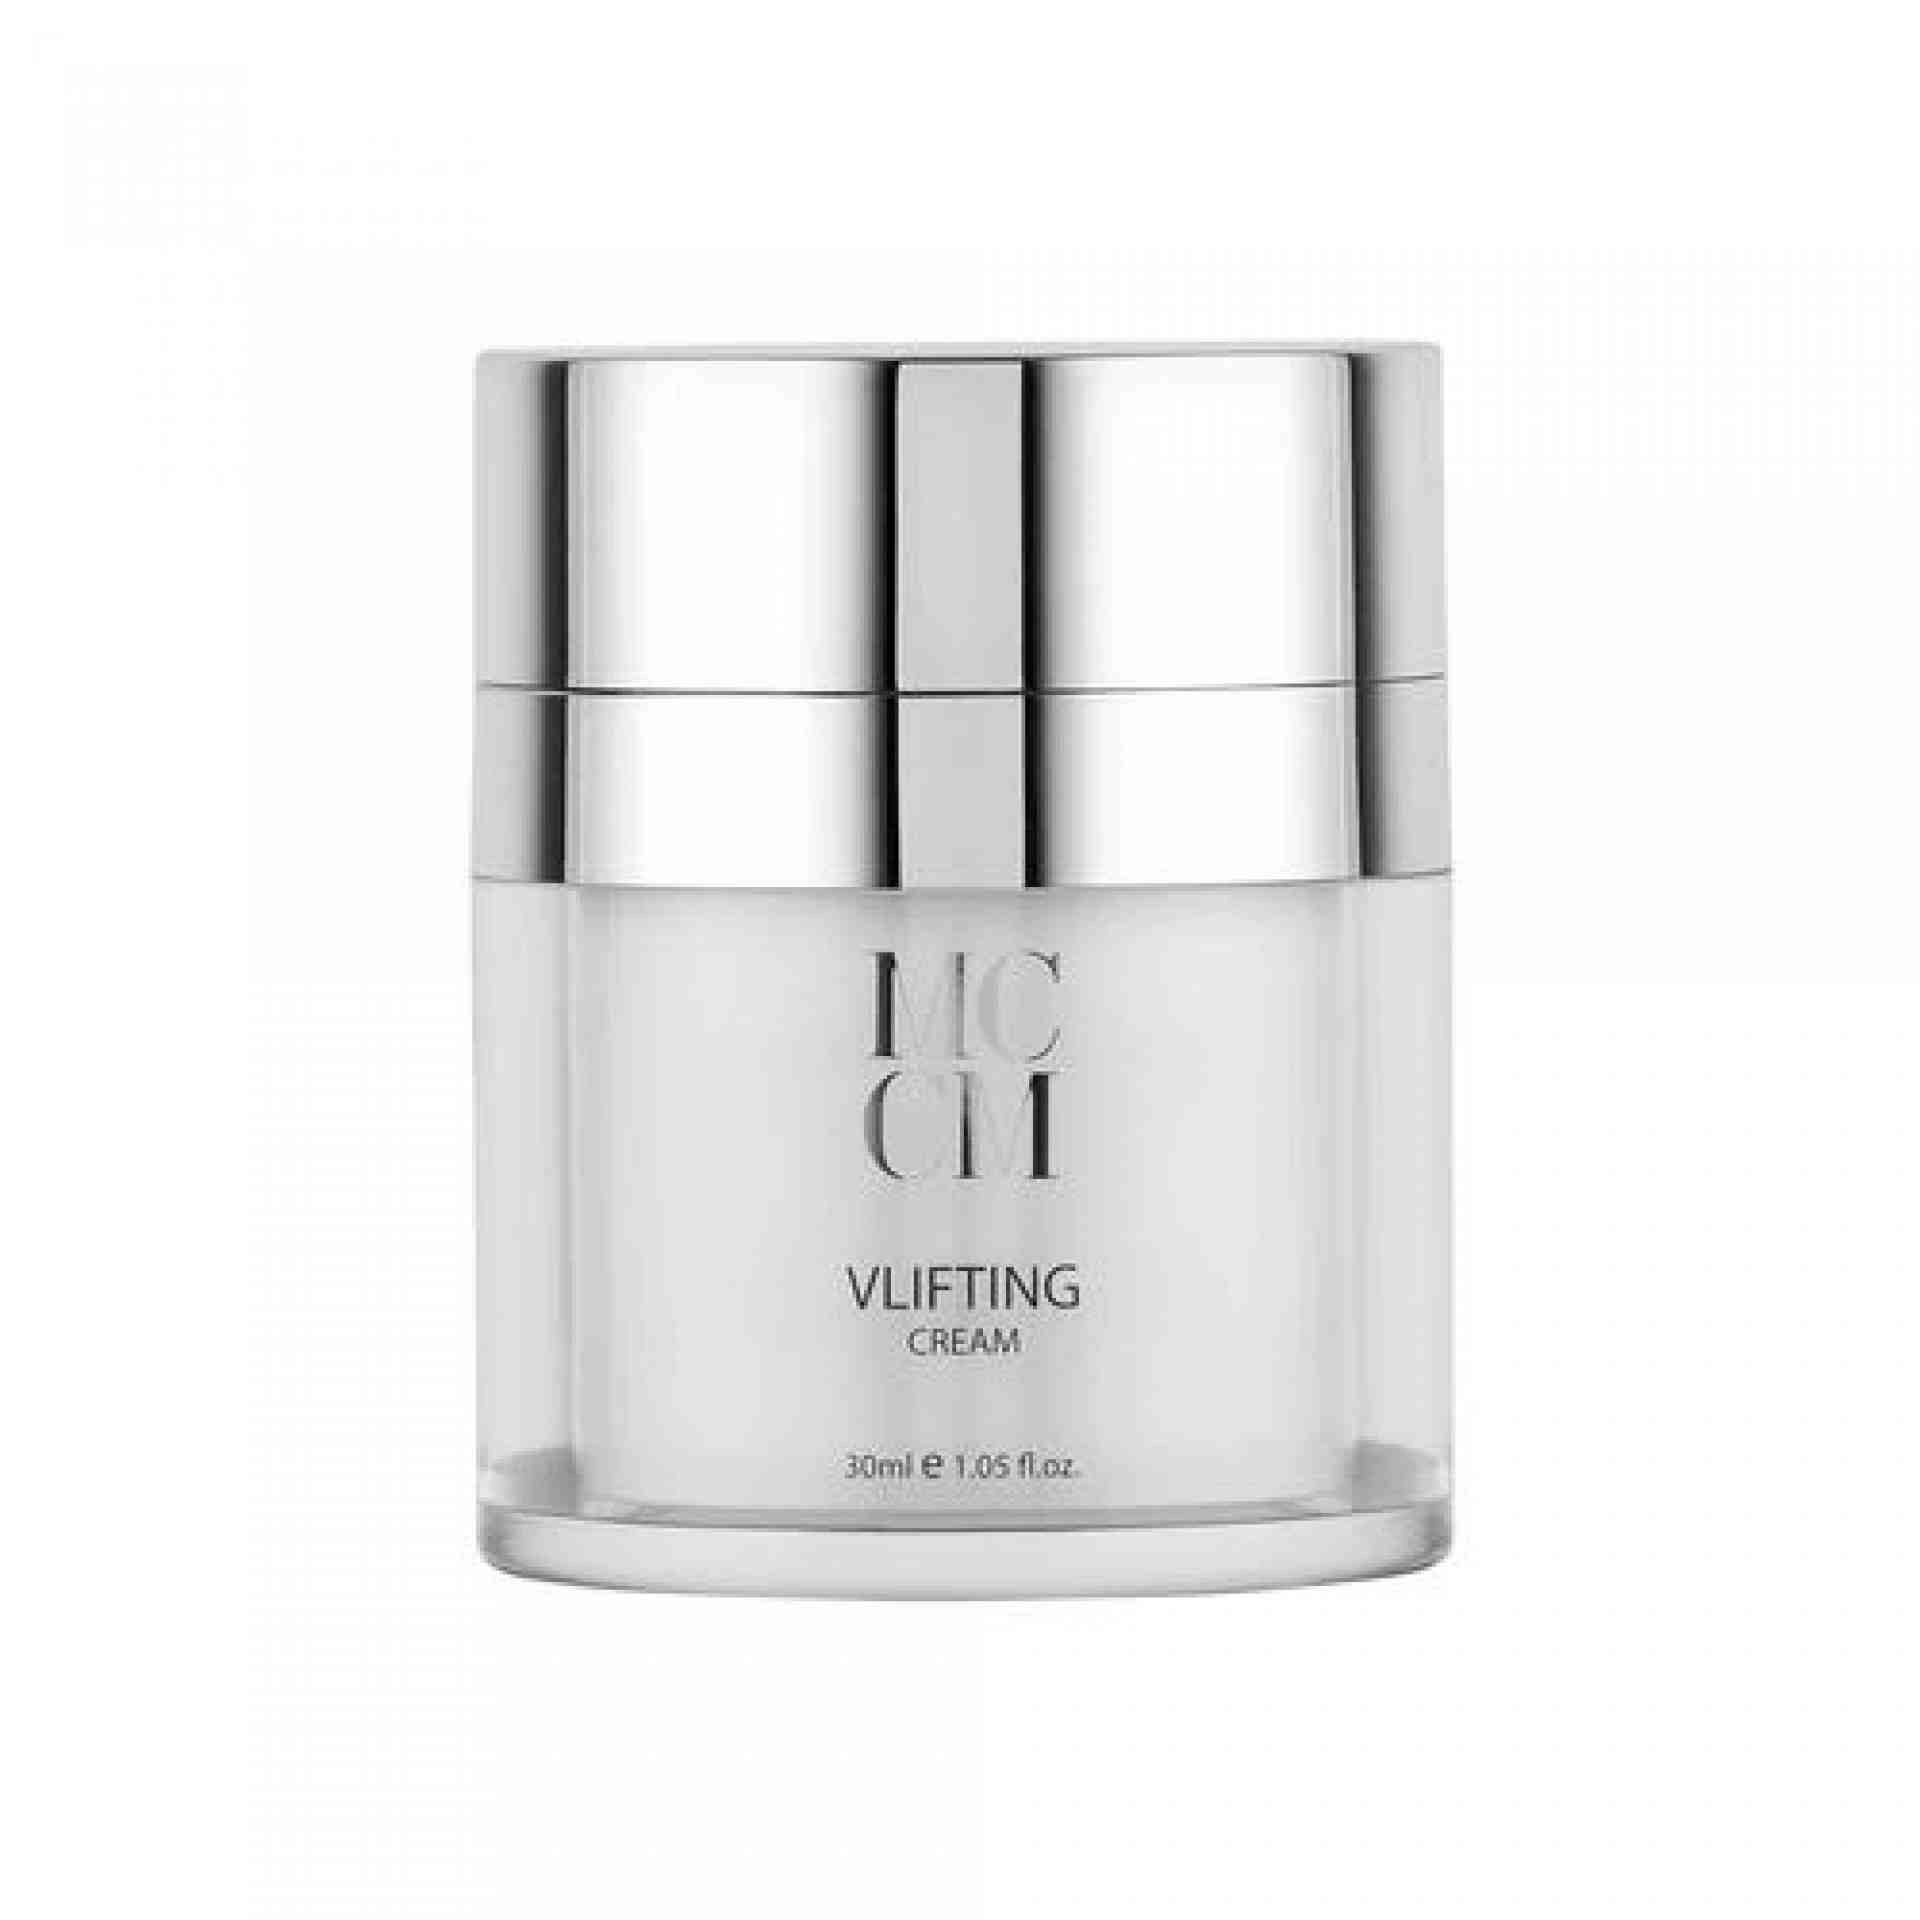 Vlifting Cream | Crema Facial efecto lifting 30 ml - Linea Facial - MCCM ®